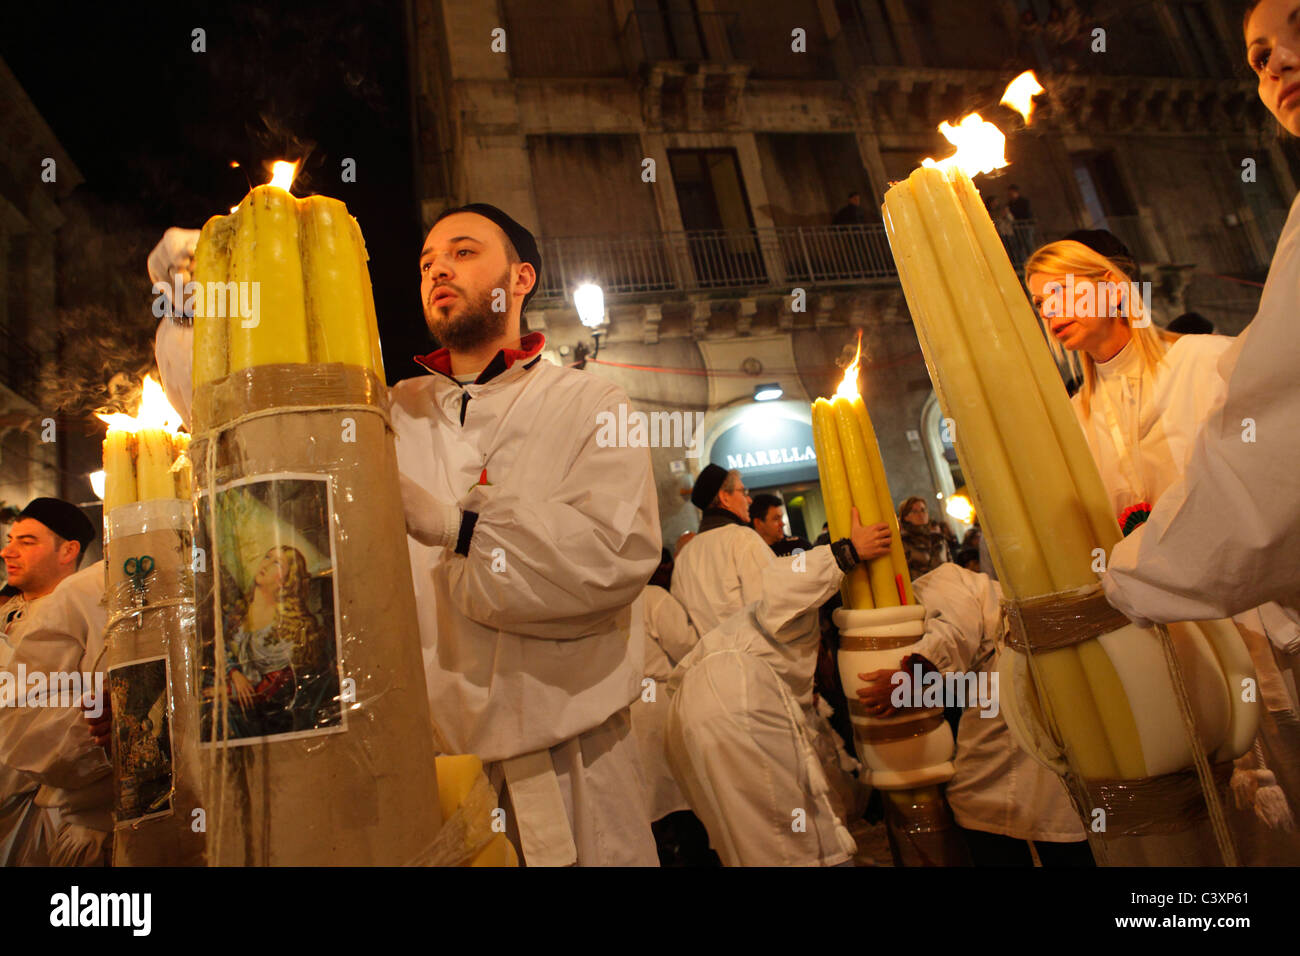 Faithfuls at the celebration of Saint Agatha, Catania, Sicily, Italy Stock Photo